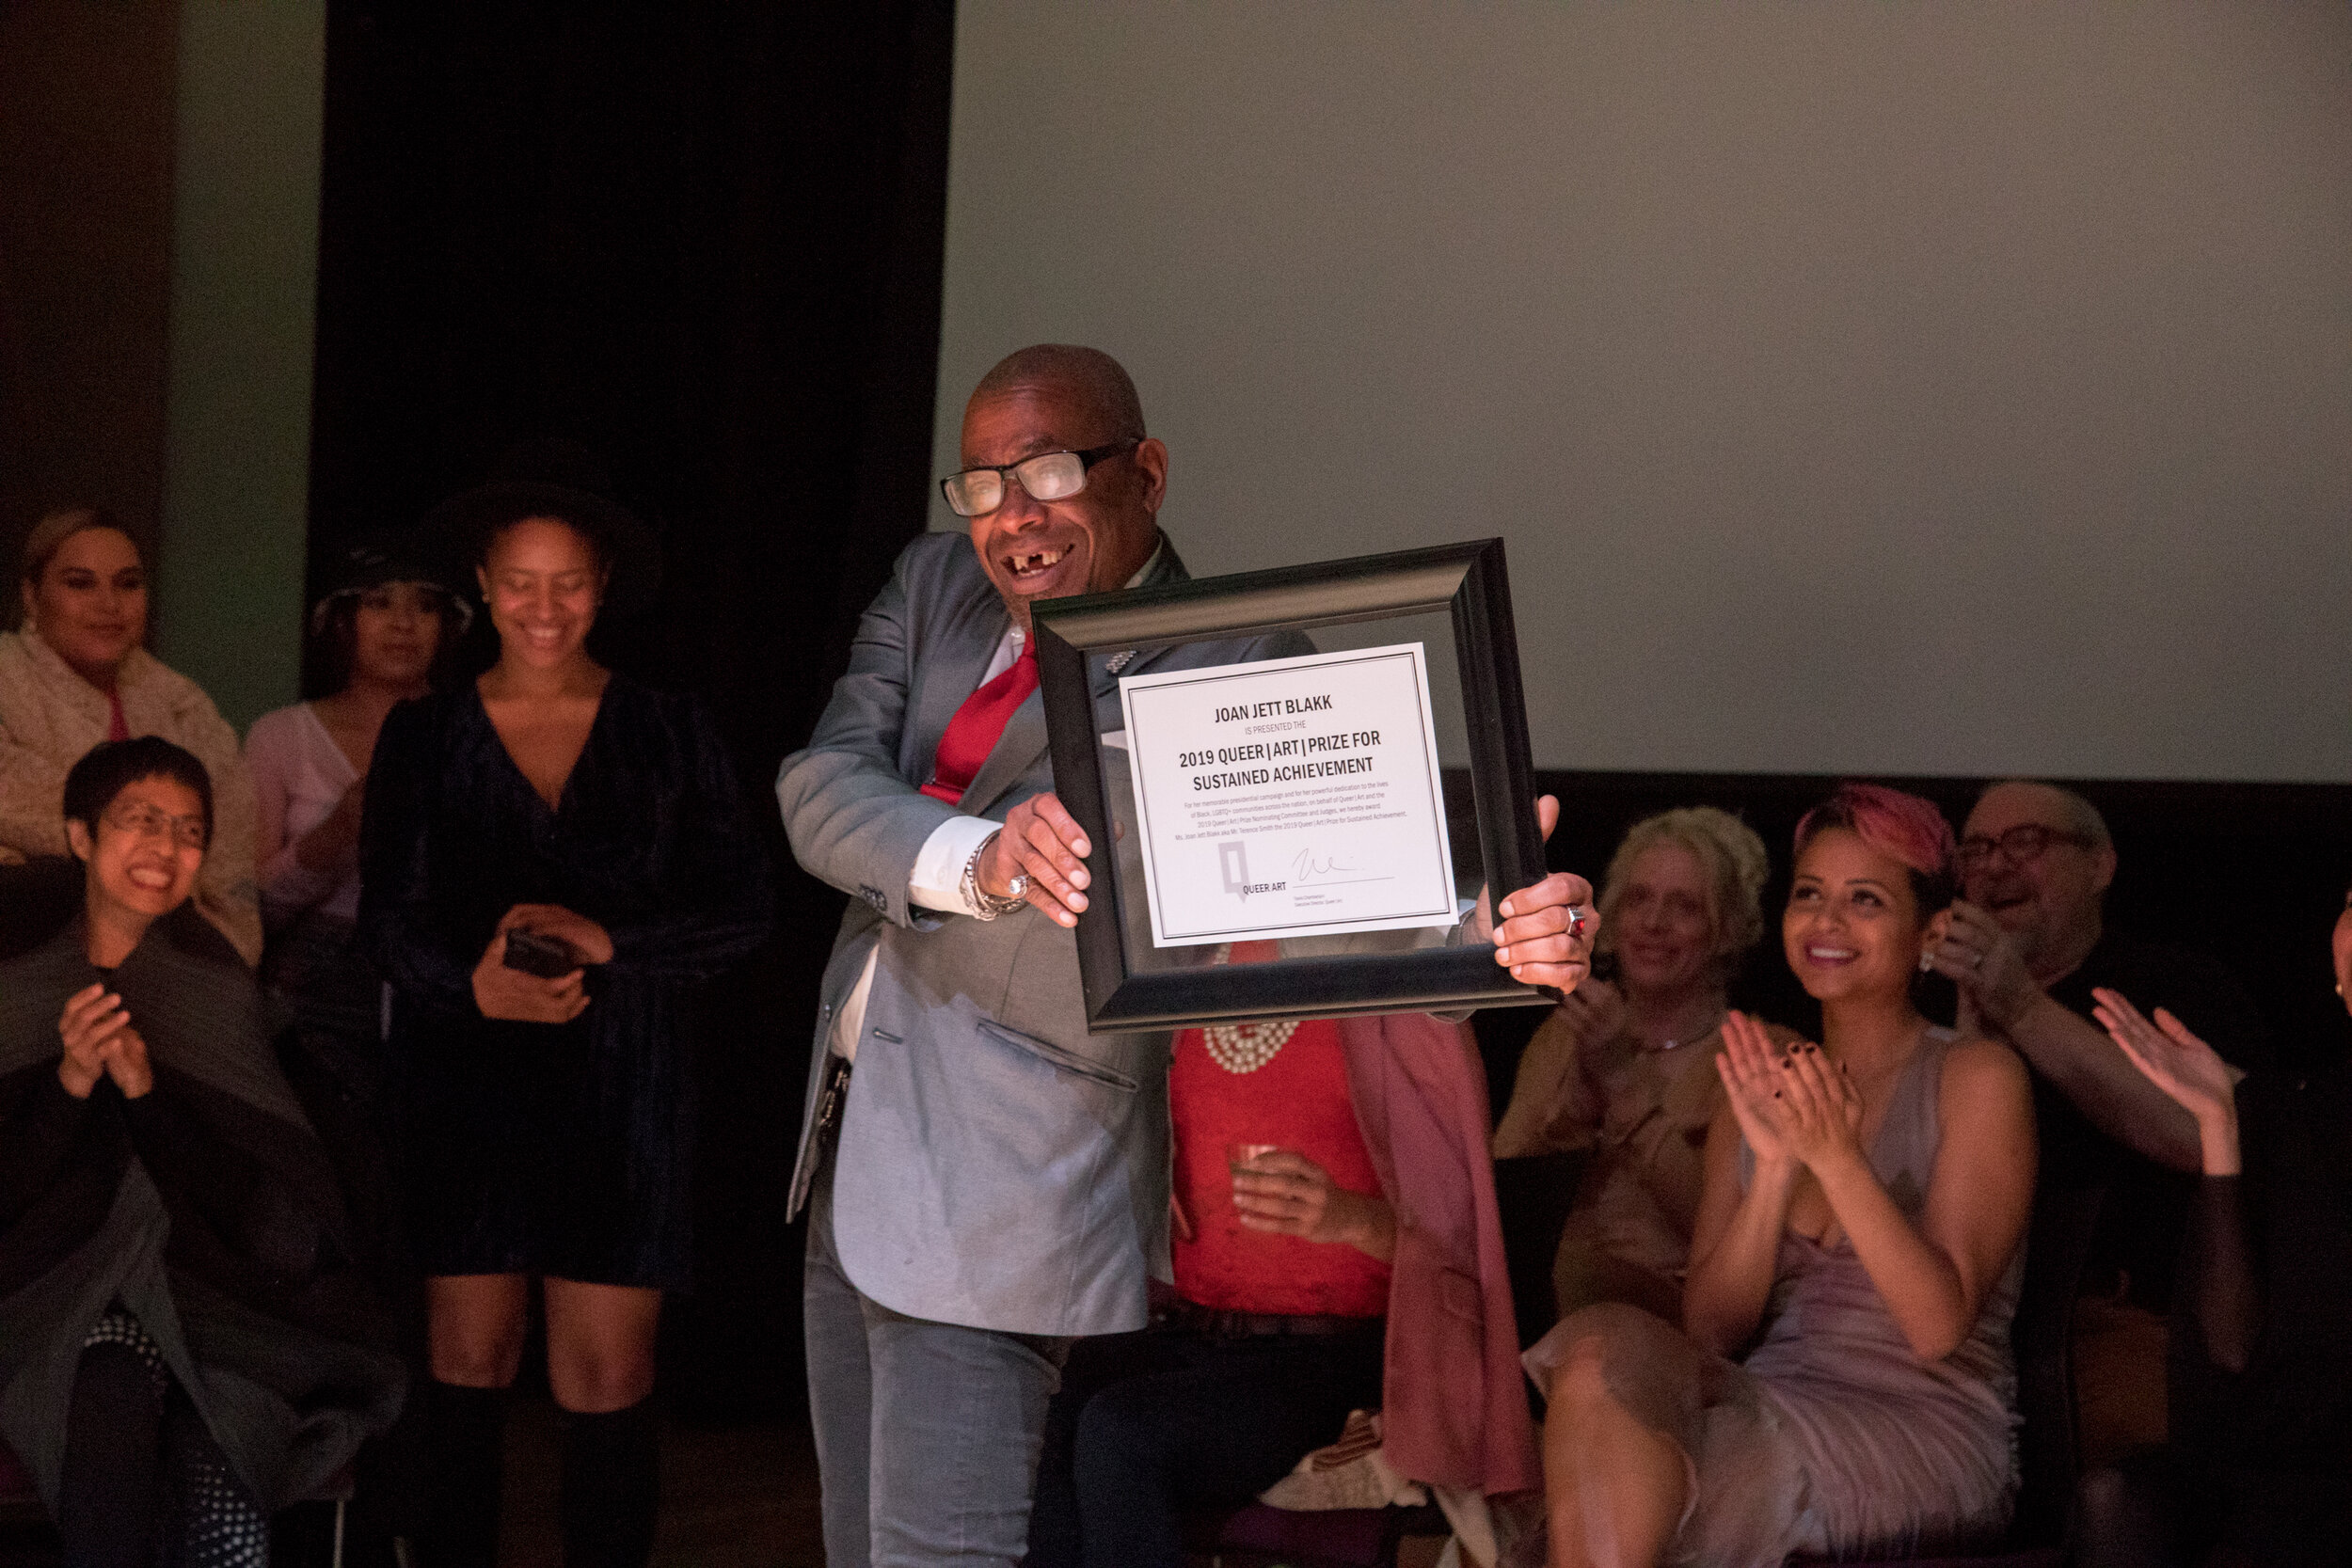 Terence Smith aka Joan Jett Blakk posing with their Sustained Achievement Award (photo by Cayetana Suzuki)